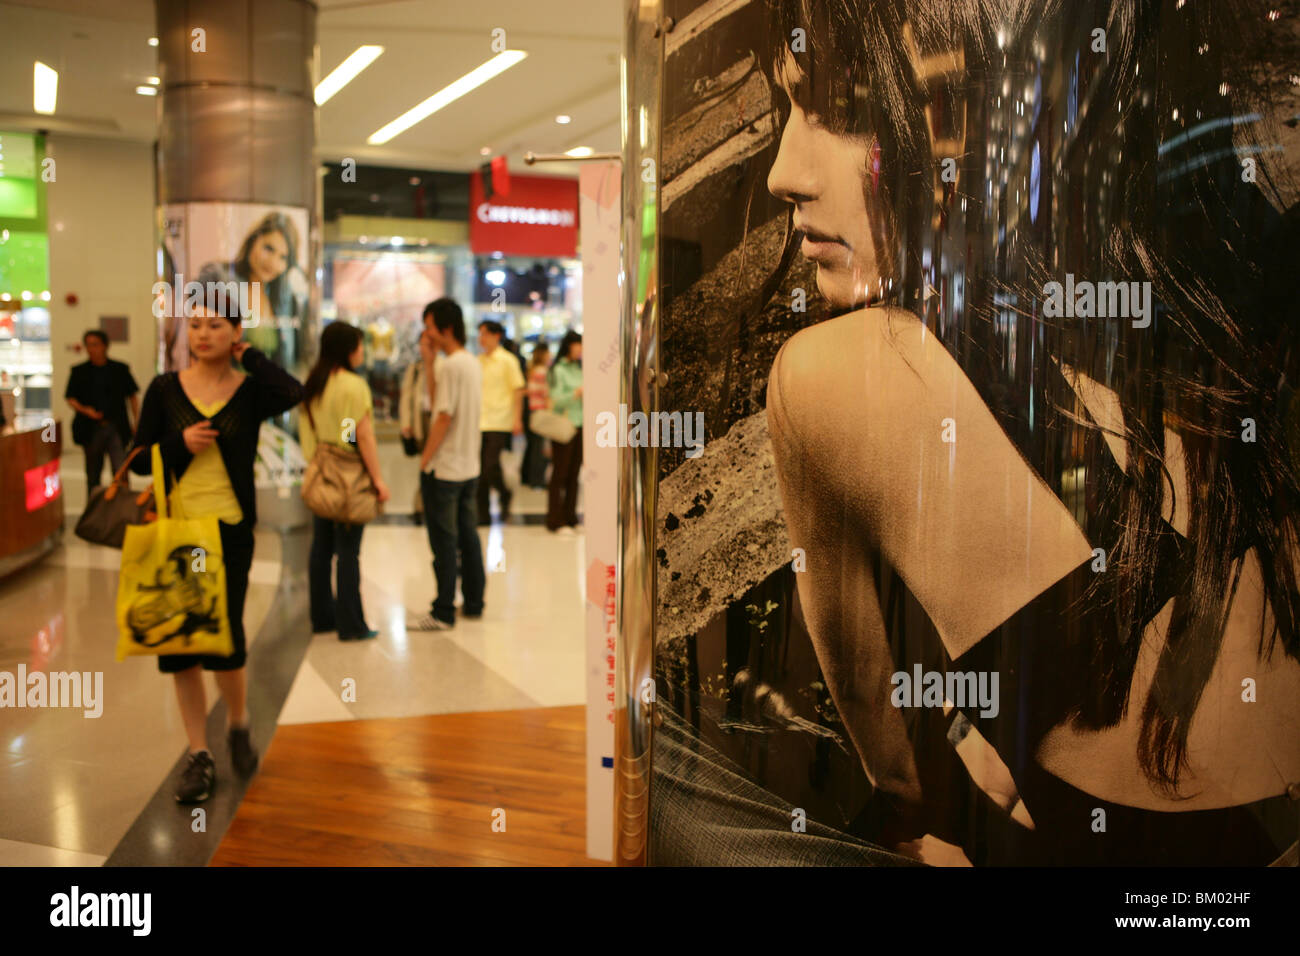 Gallerie dello shopping di Shanghai, centri commerciali, escalator, negozi, magazzini, mega centri commerciali, multipiano, pubblicità, consumatori, moda, Foto Stock